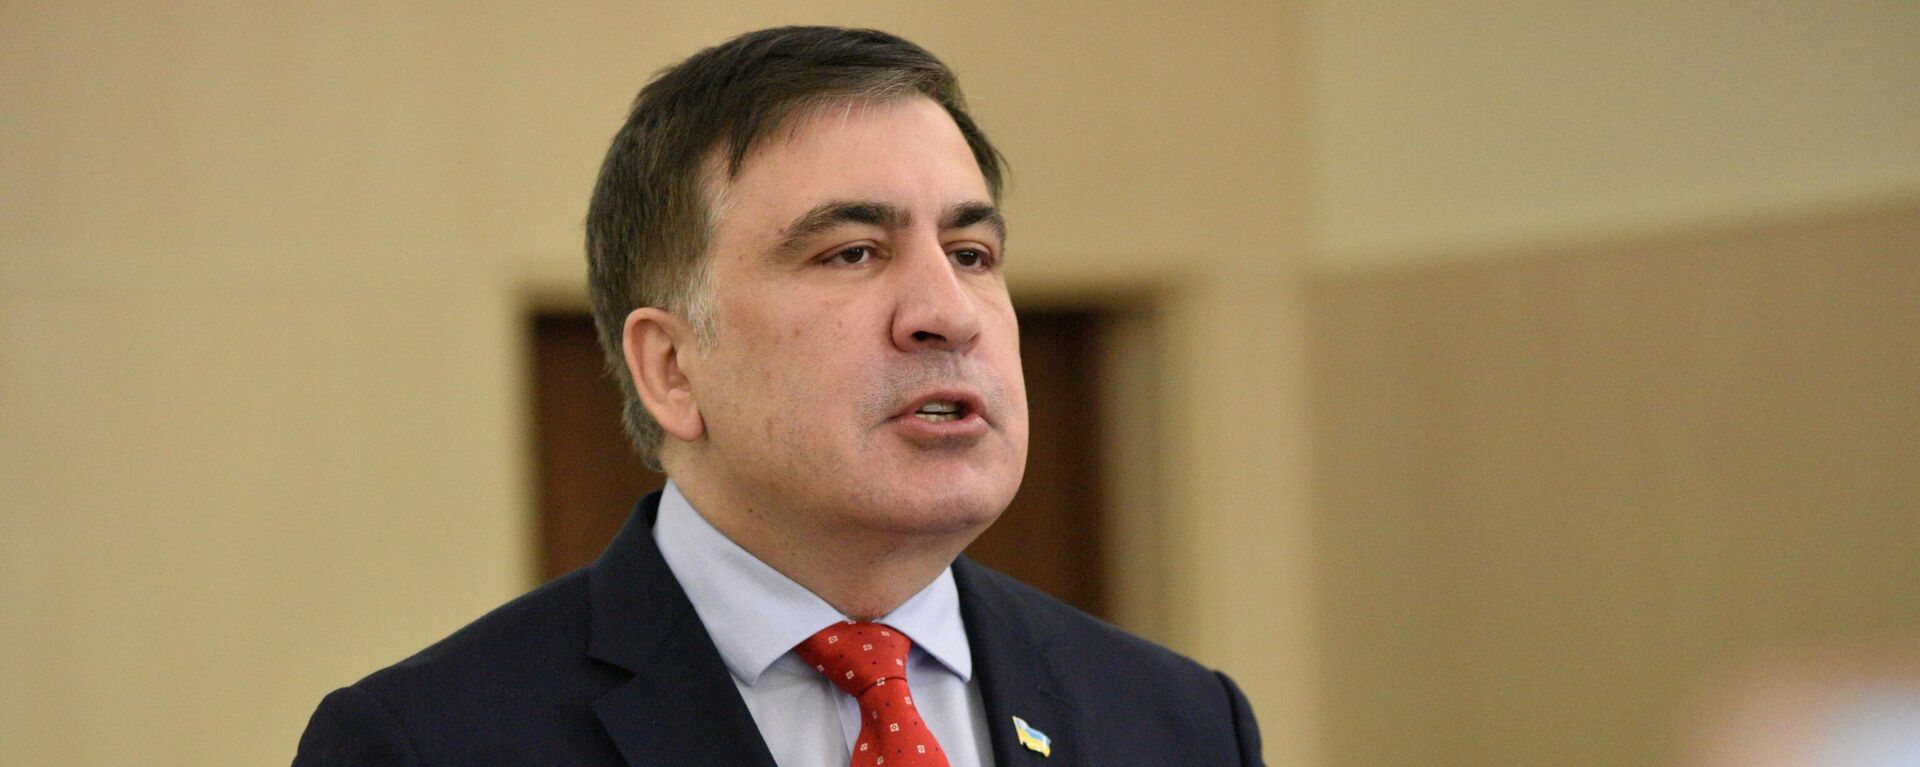 Экс-президент Грузии, бывший губернатор Одесской области Михаил Саакашвили  - Sputnik Азербайджан, 1920, 03.11.2021